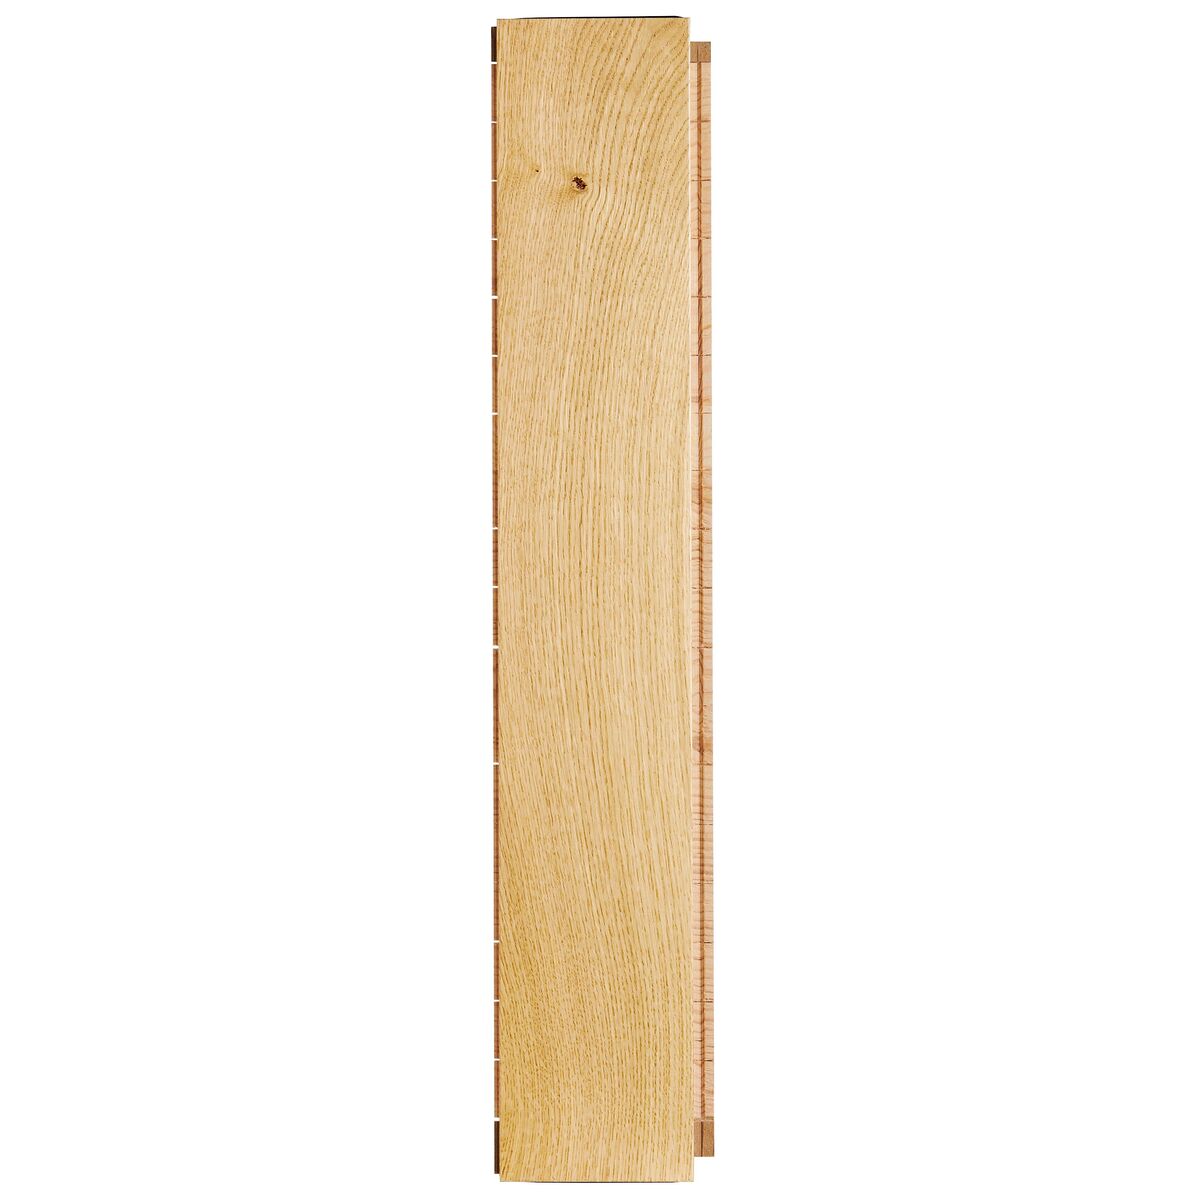 Podłoga drewniana deska trójwarstwowa jodełka klasyczna dąb szczotkowany 1-lamelowa lakier matowy 14 mm Barlinek